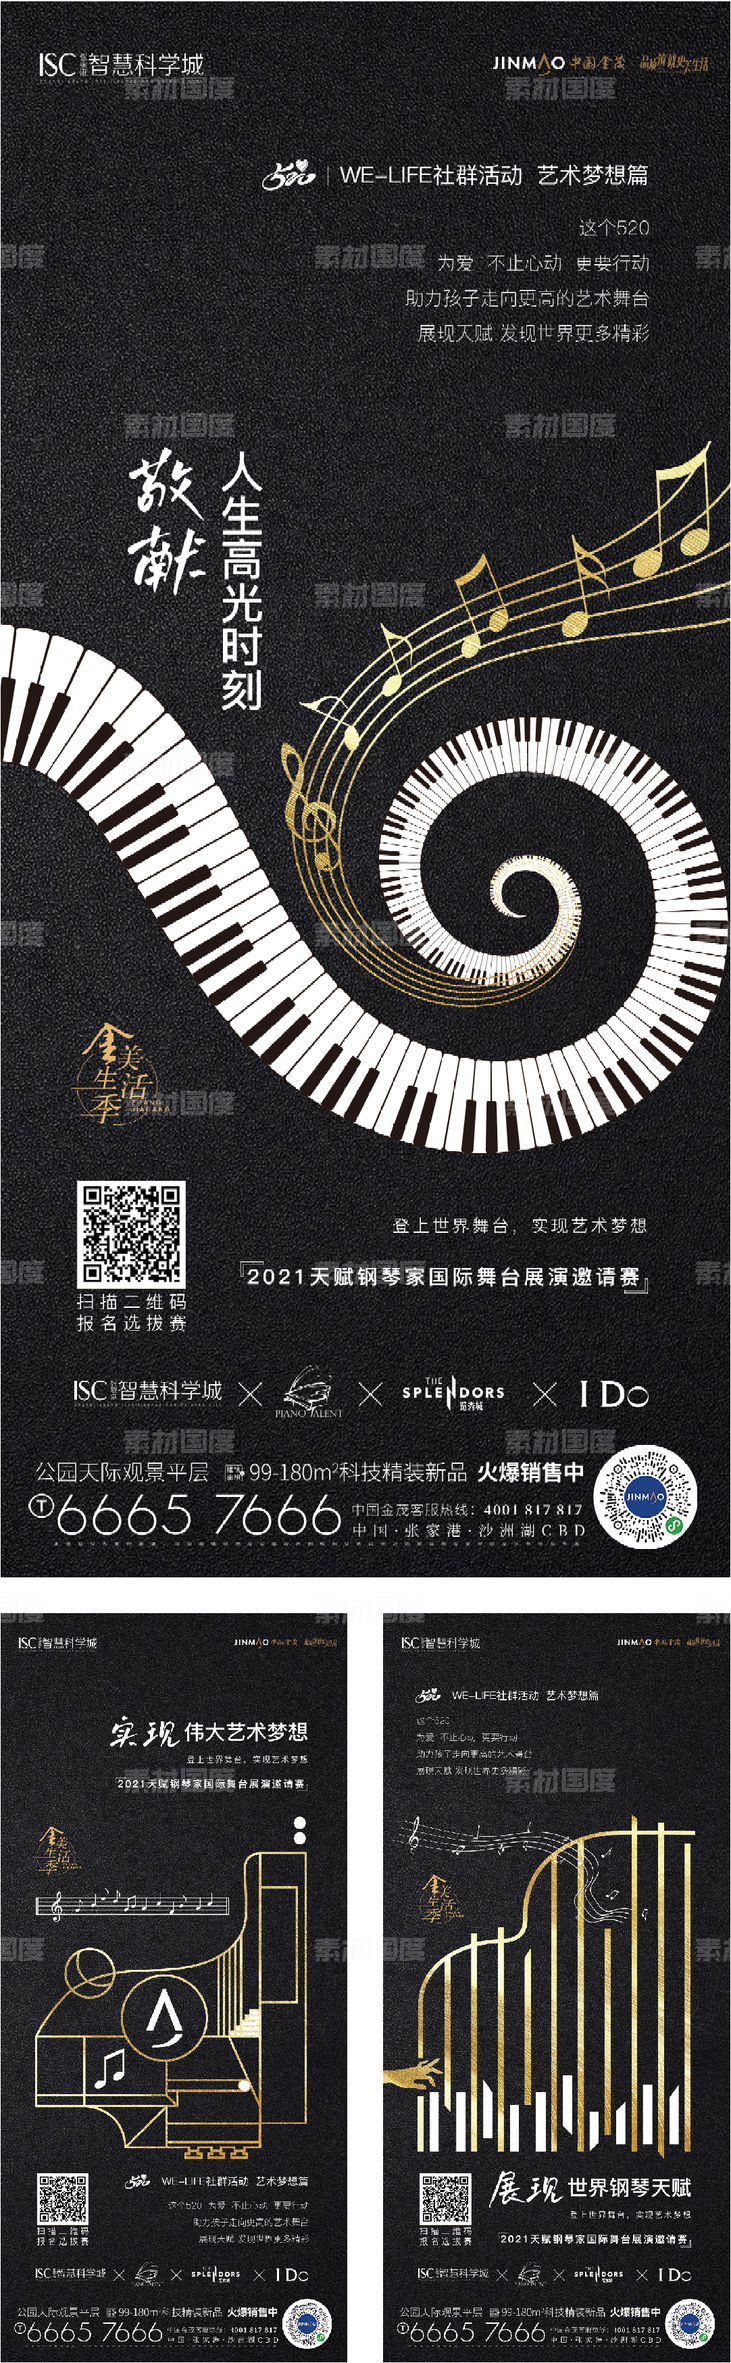 钢琴表演活动海报